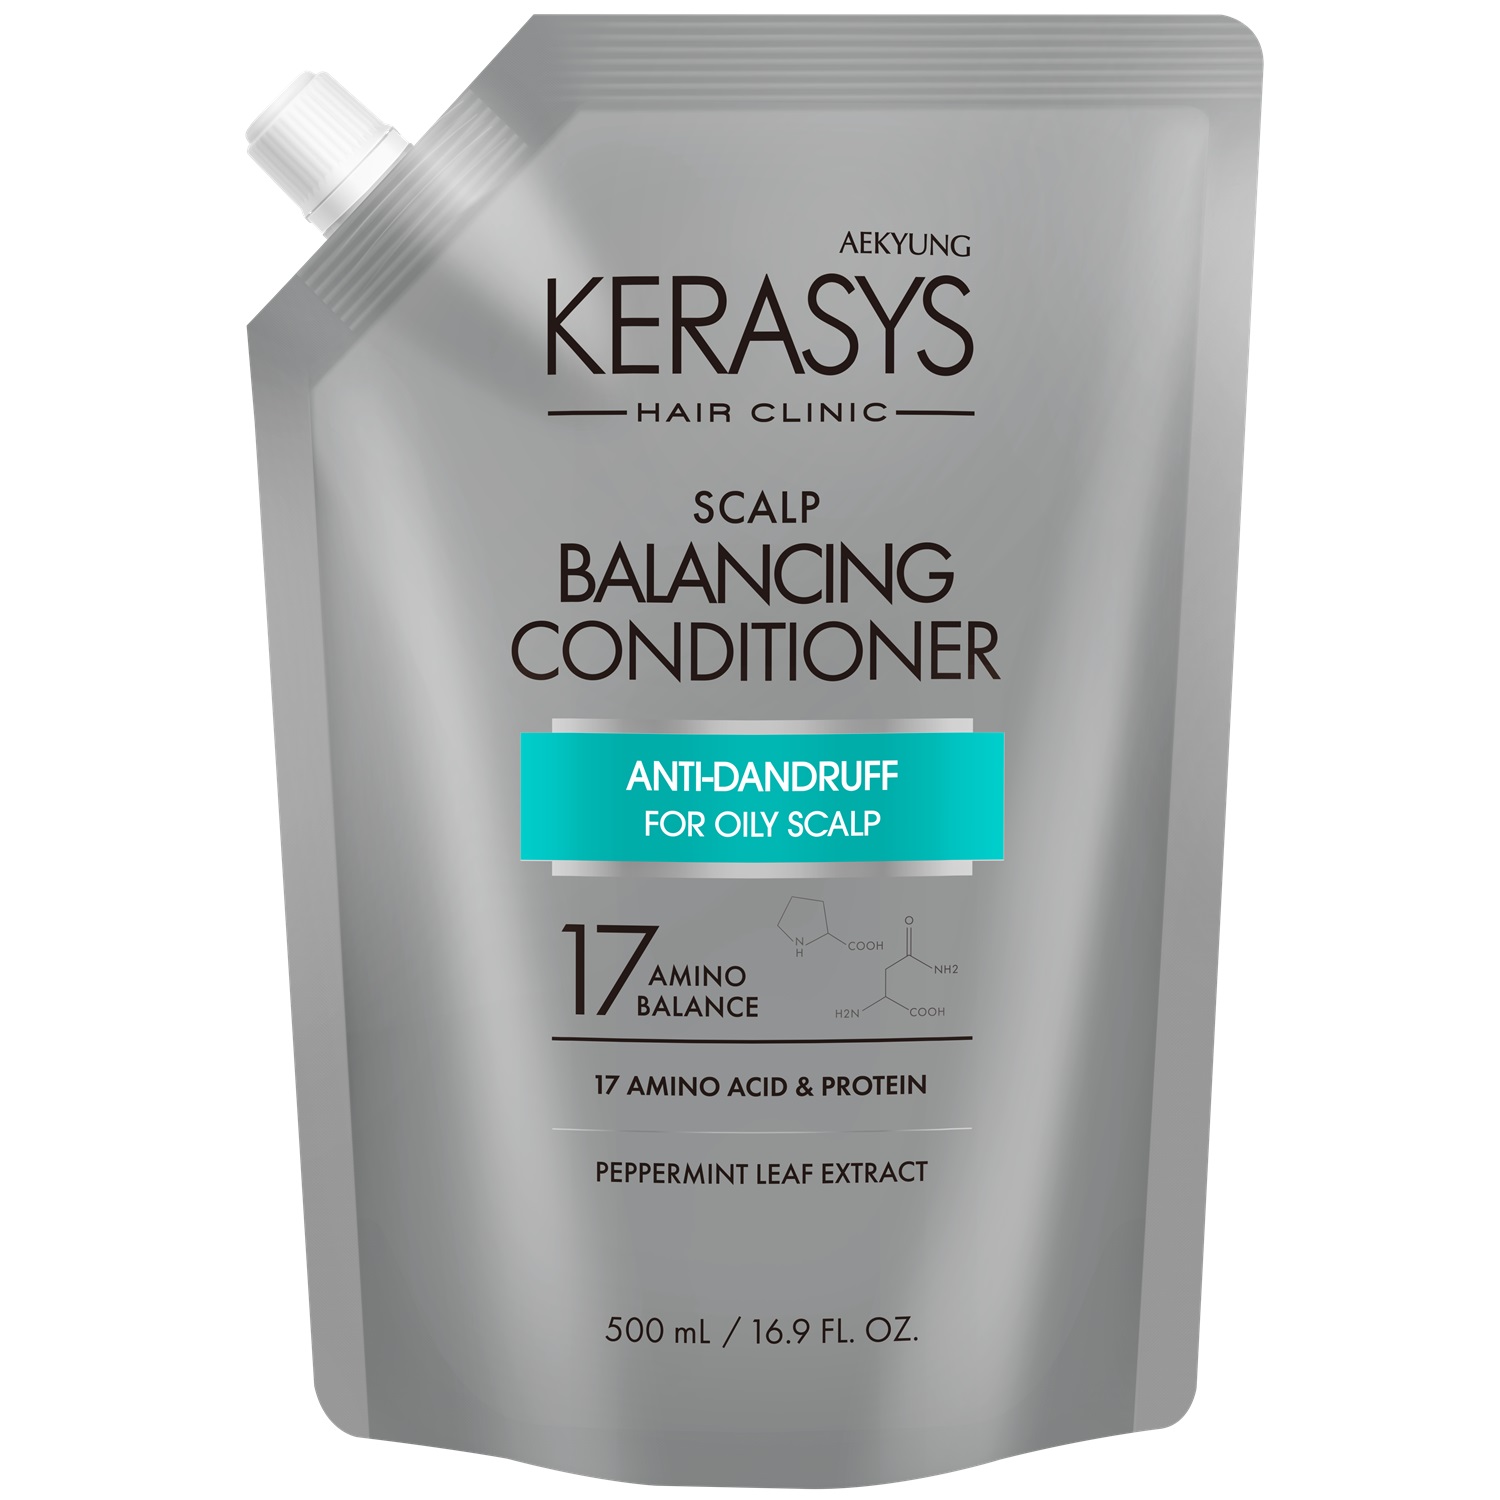 Kerasys Кондиционер для лечения кожи головы Balancing запасной блок, 500 мл (Kerasys, Scalp Care) кондиционер kerasys для лечения кожи головы 500 мл